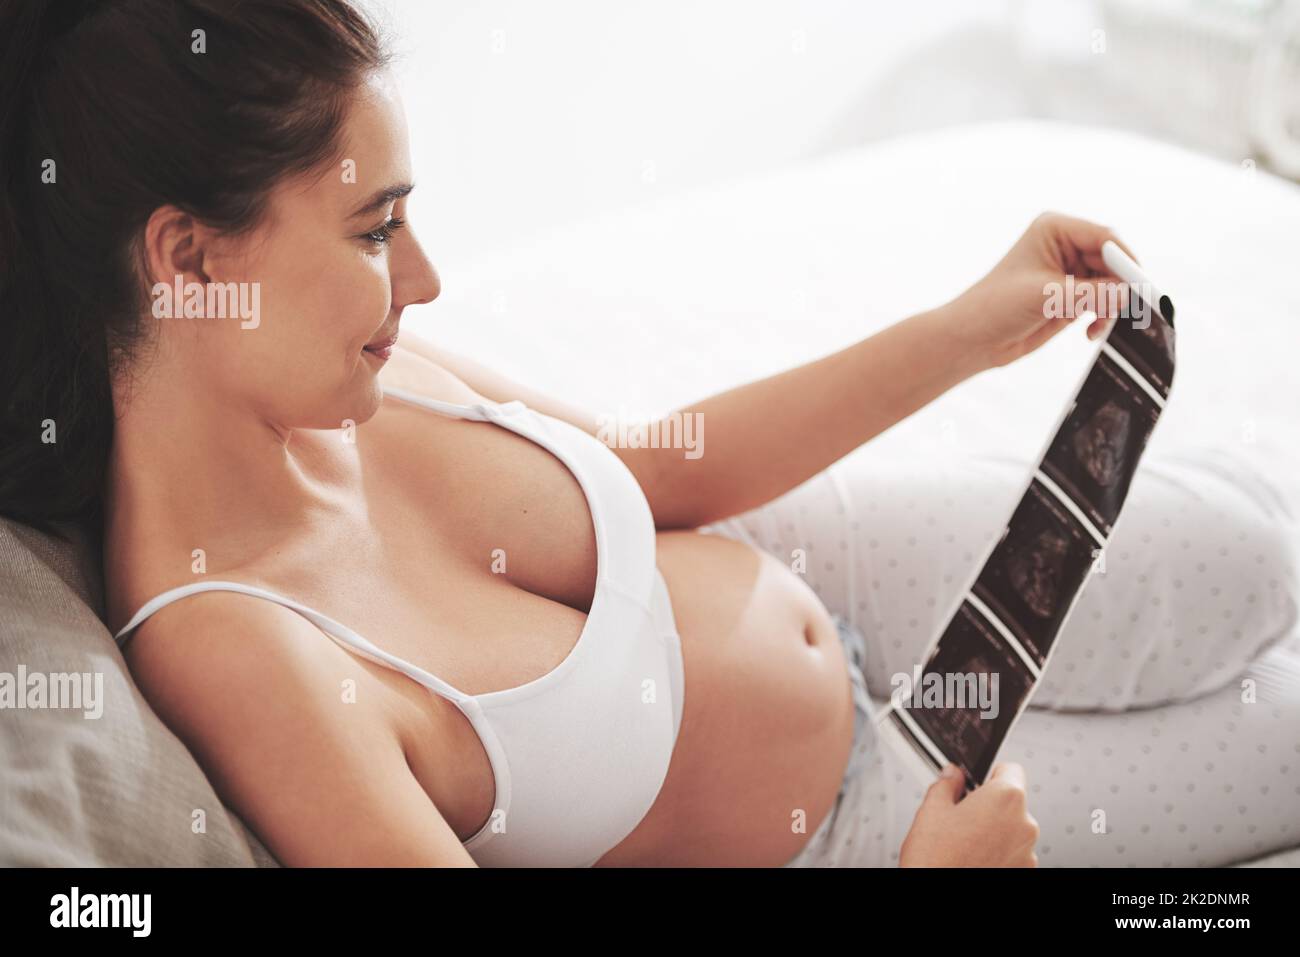 L'amour à première vue. Prise de vue d'une femme enceinte regardant une image d'un échogramme à la maison. Banque D'Images